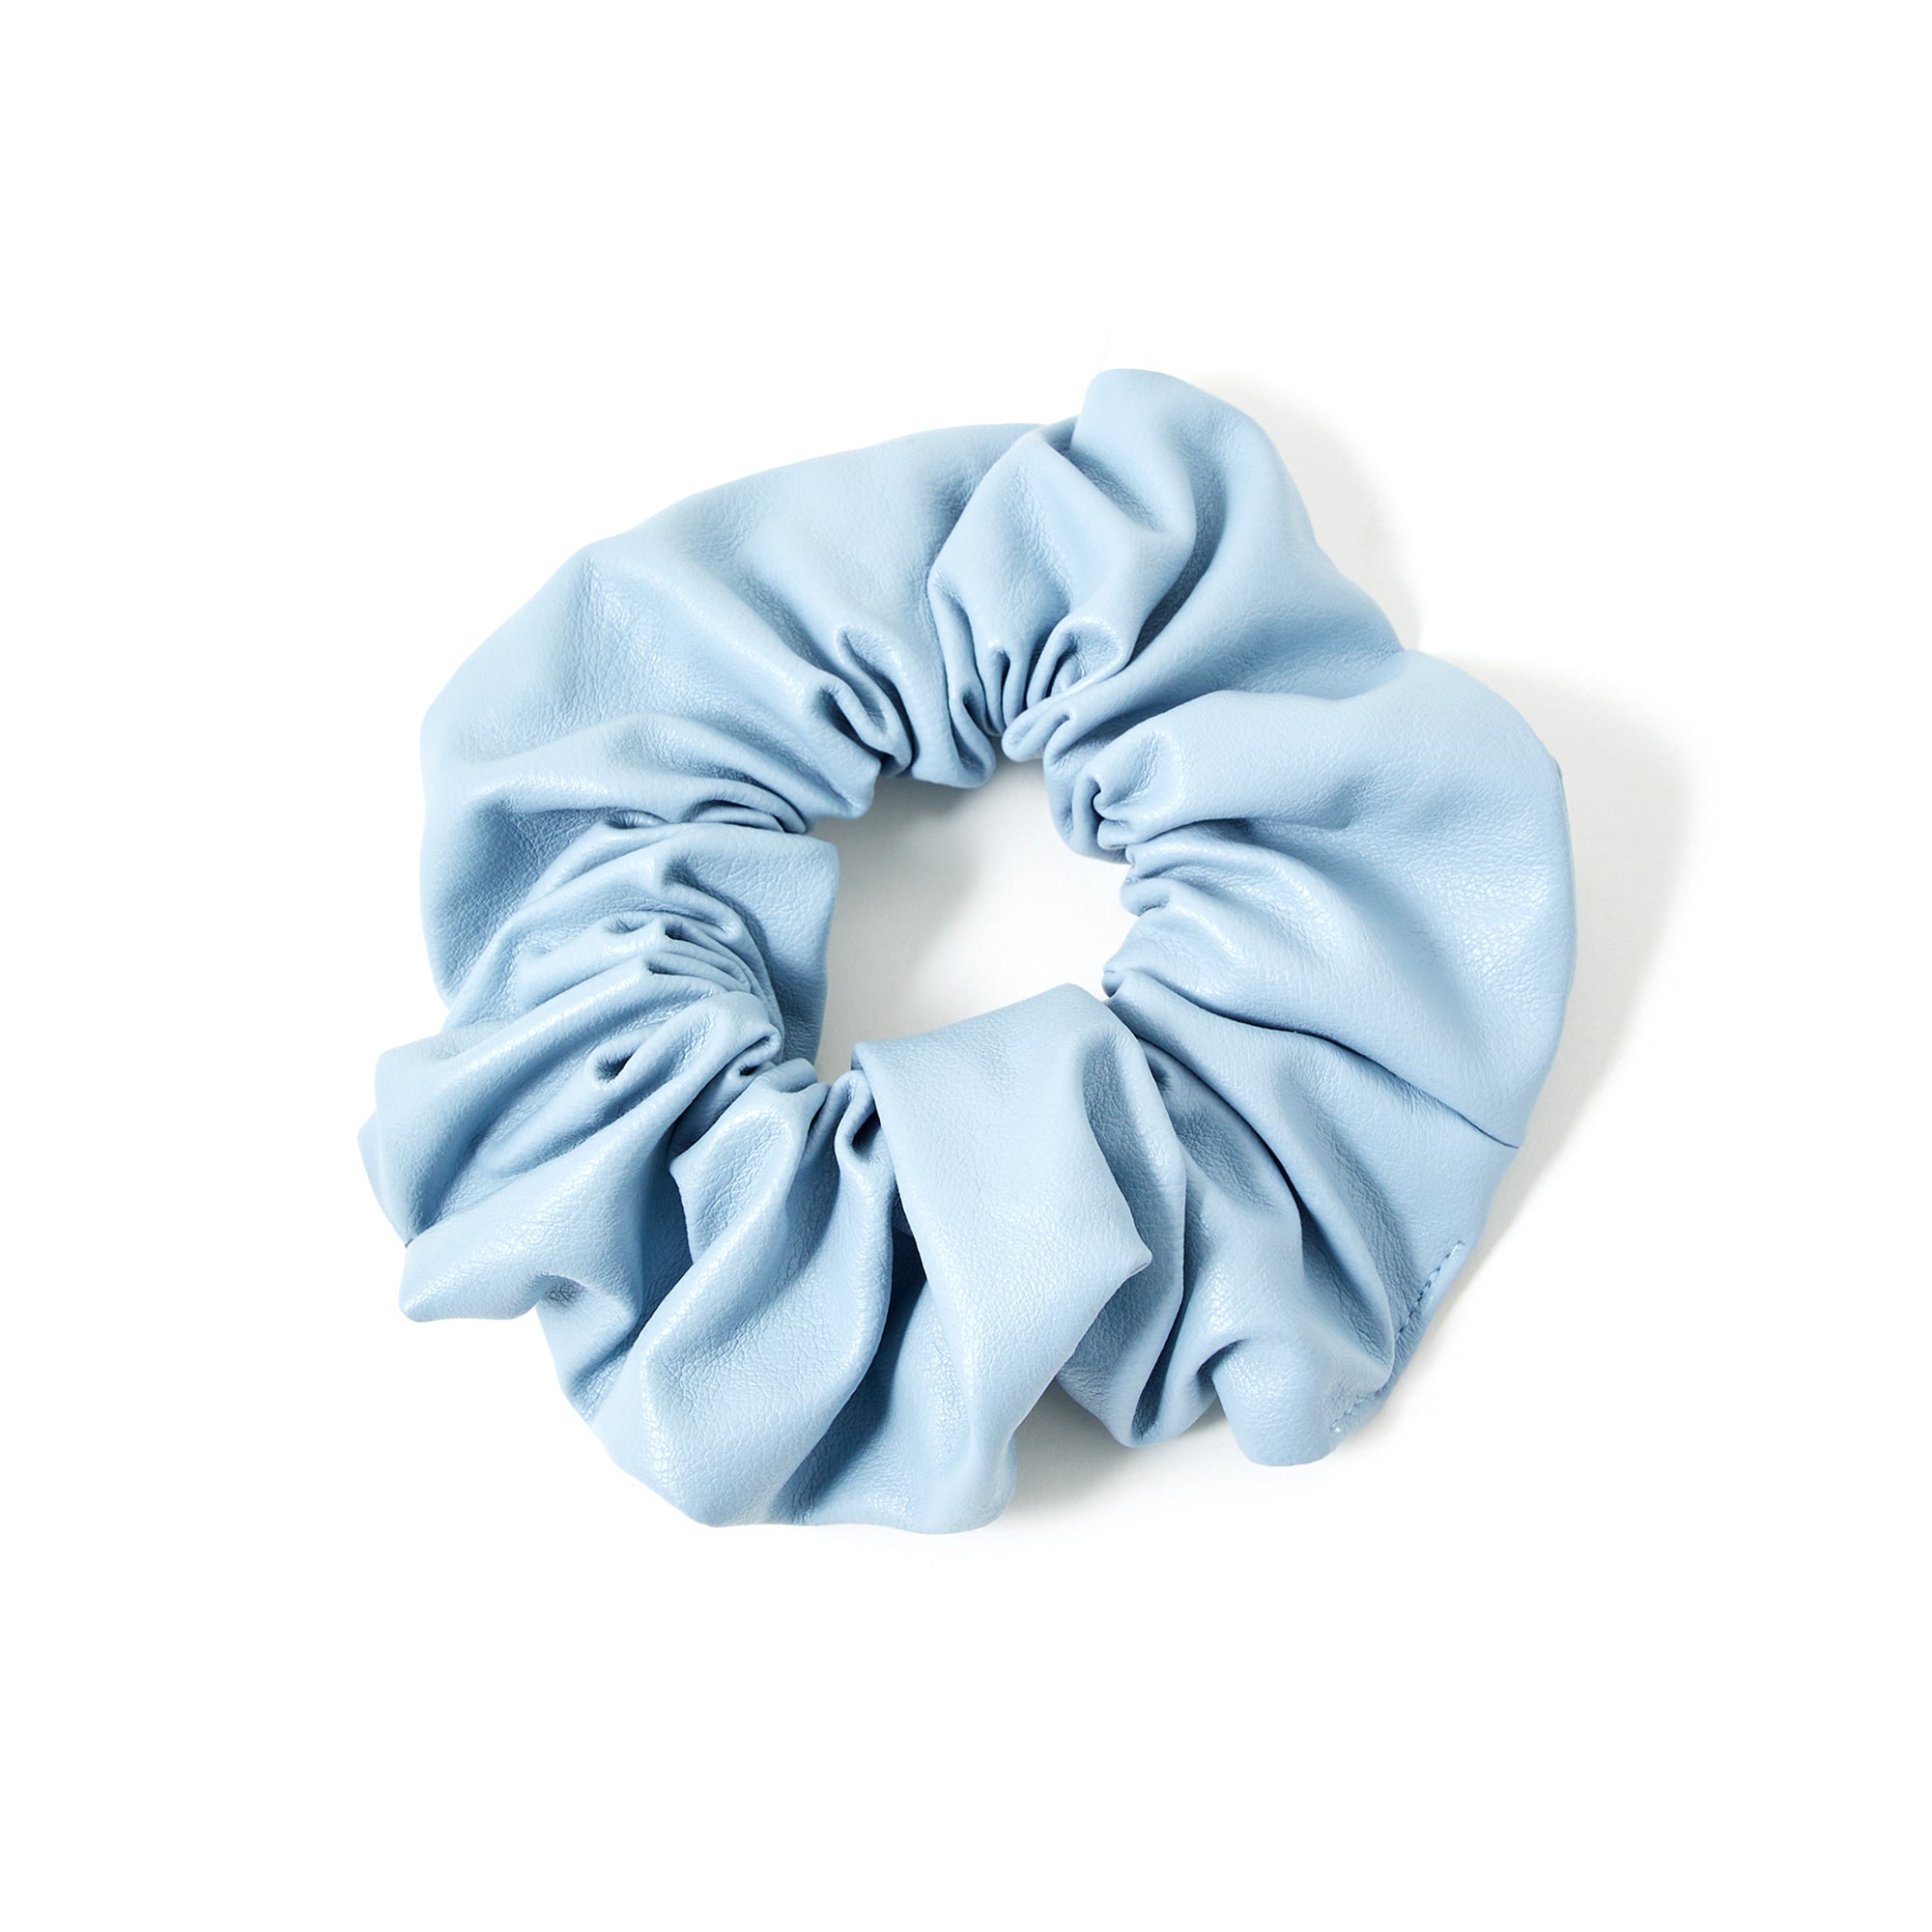 Accessorize London Women's Light Blue Textured Pu Hair Scrunchie